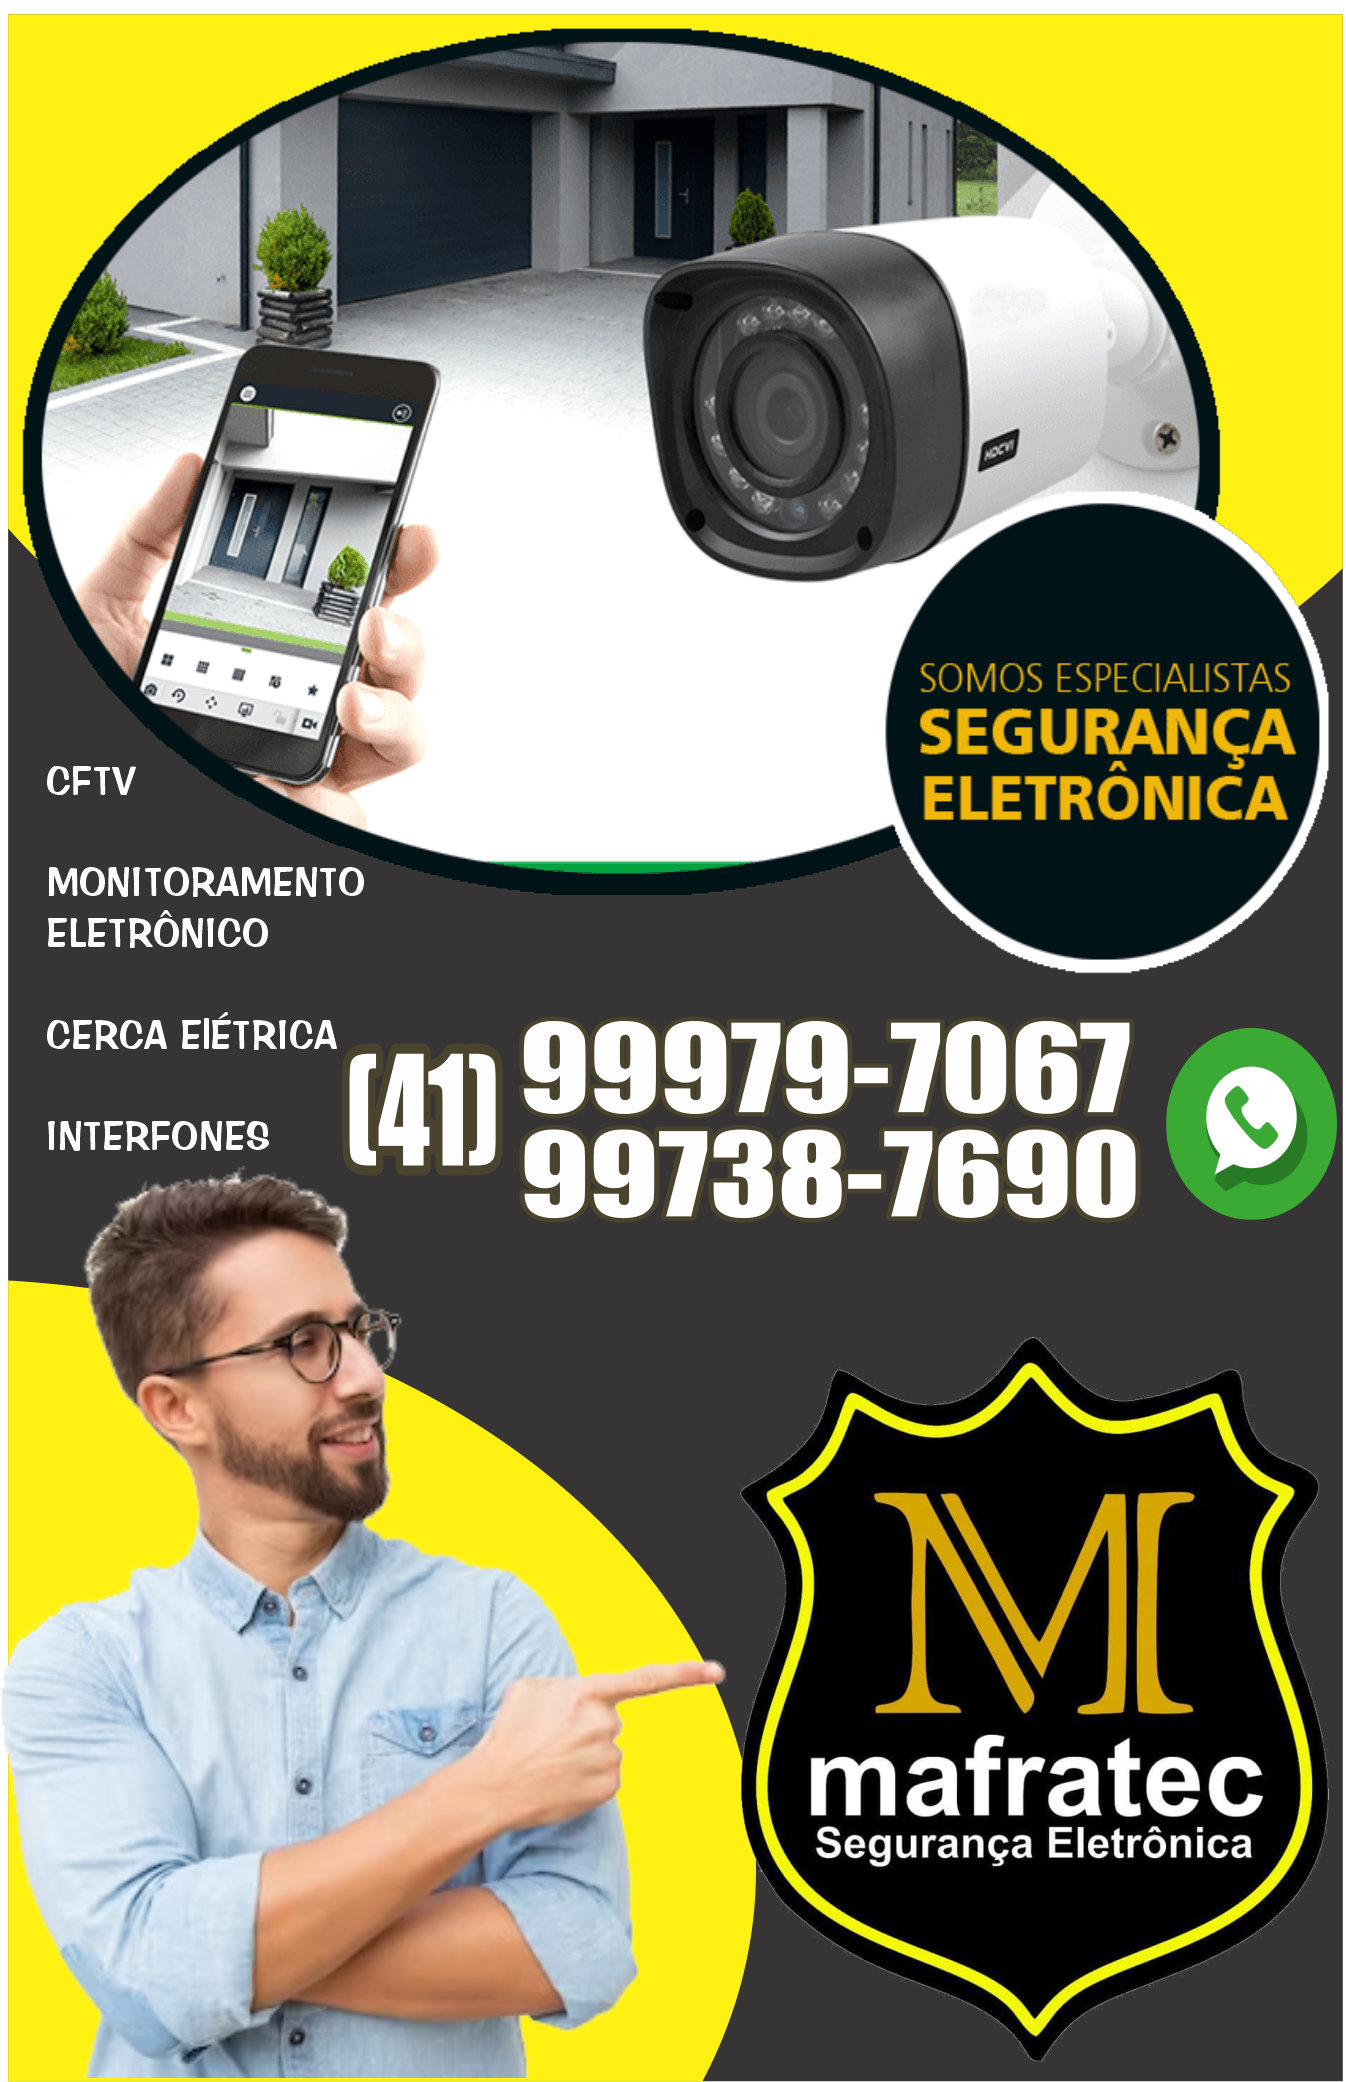 mafratec segurança eletrônica - 3605-1123 - 99738-7690 -99979-7067- guia do síndico